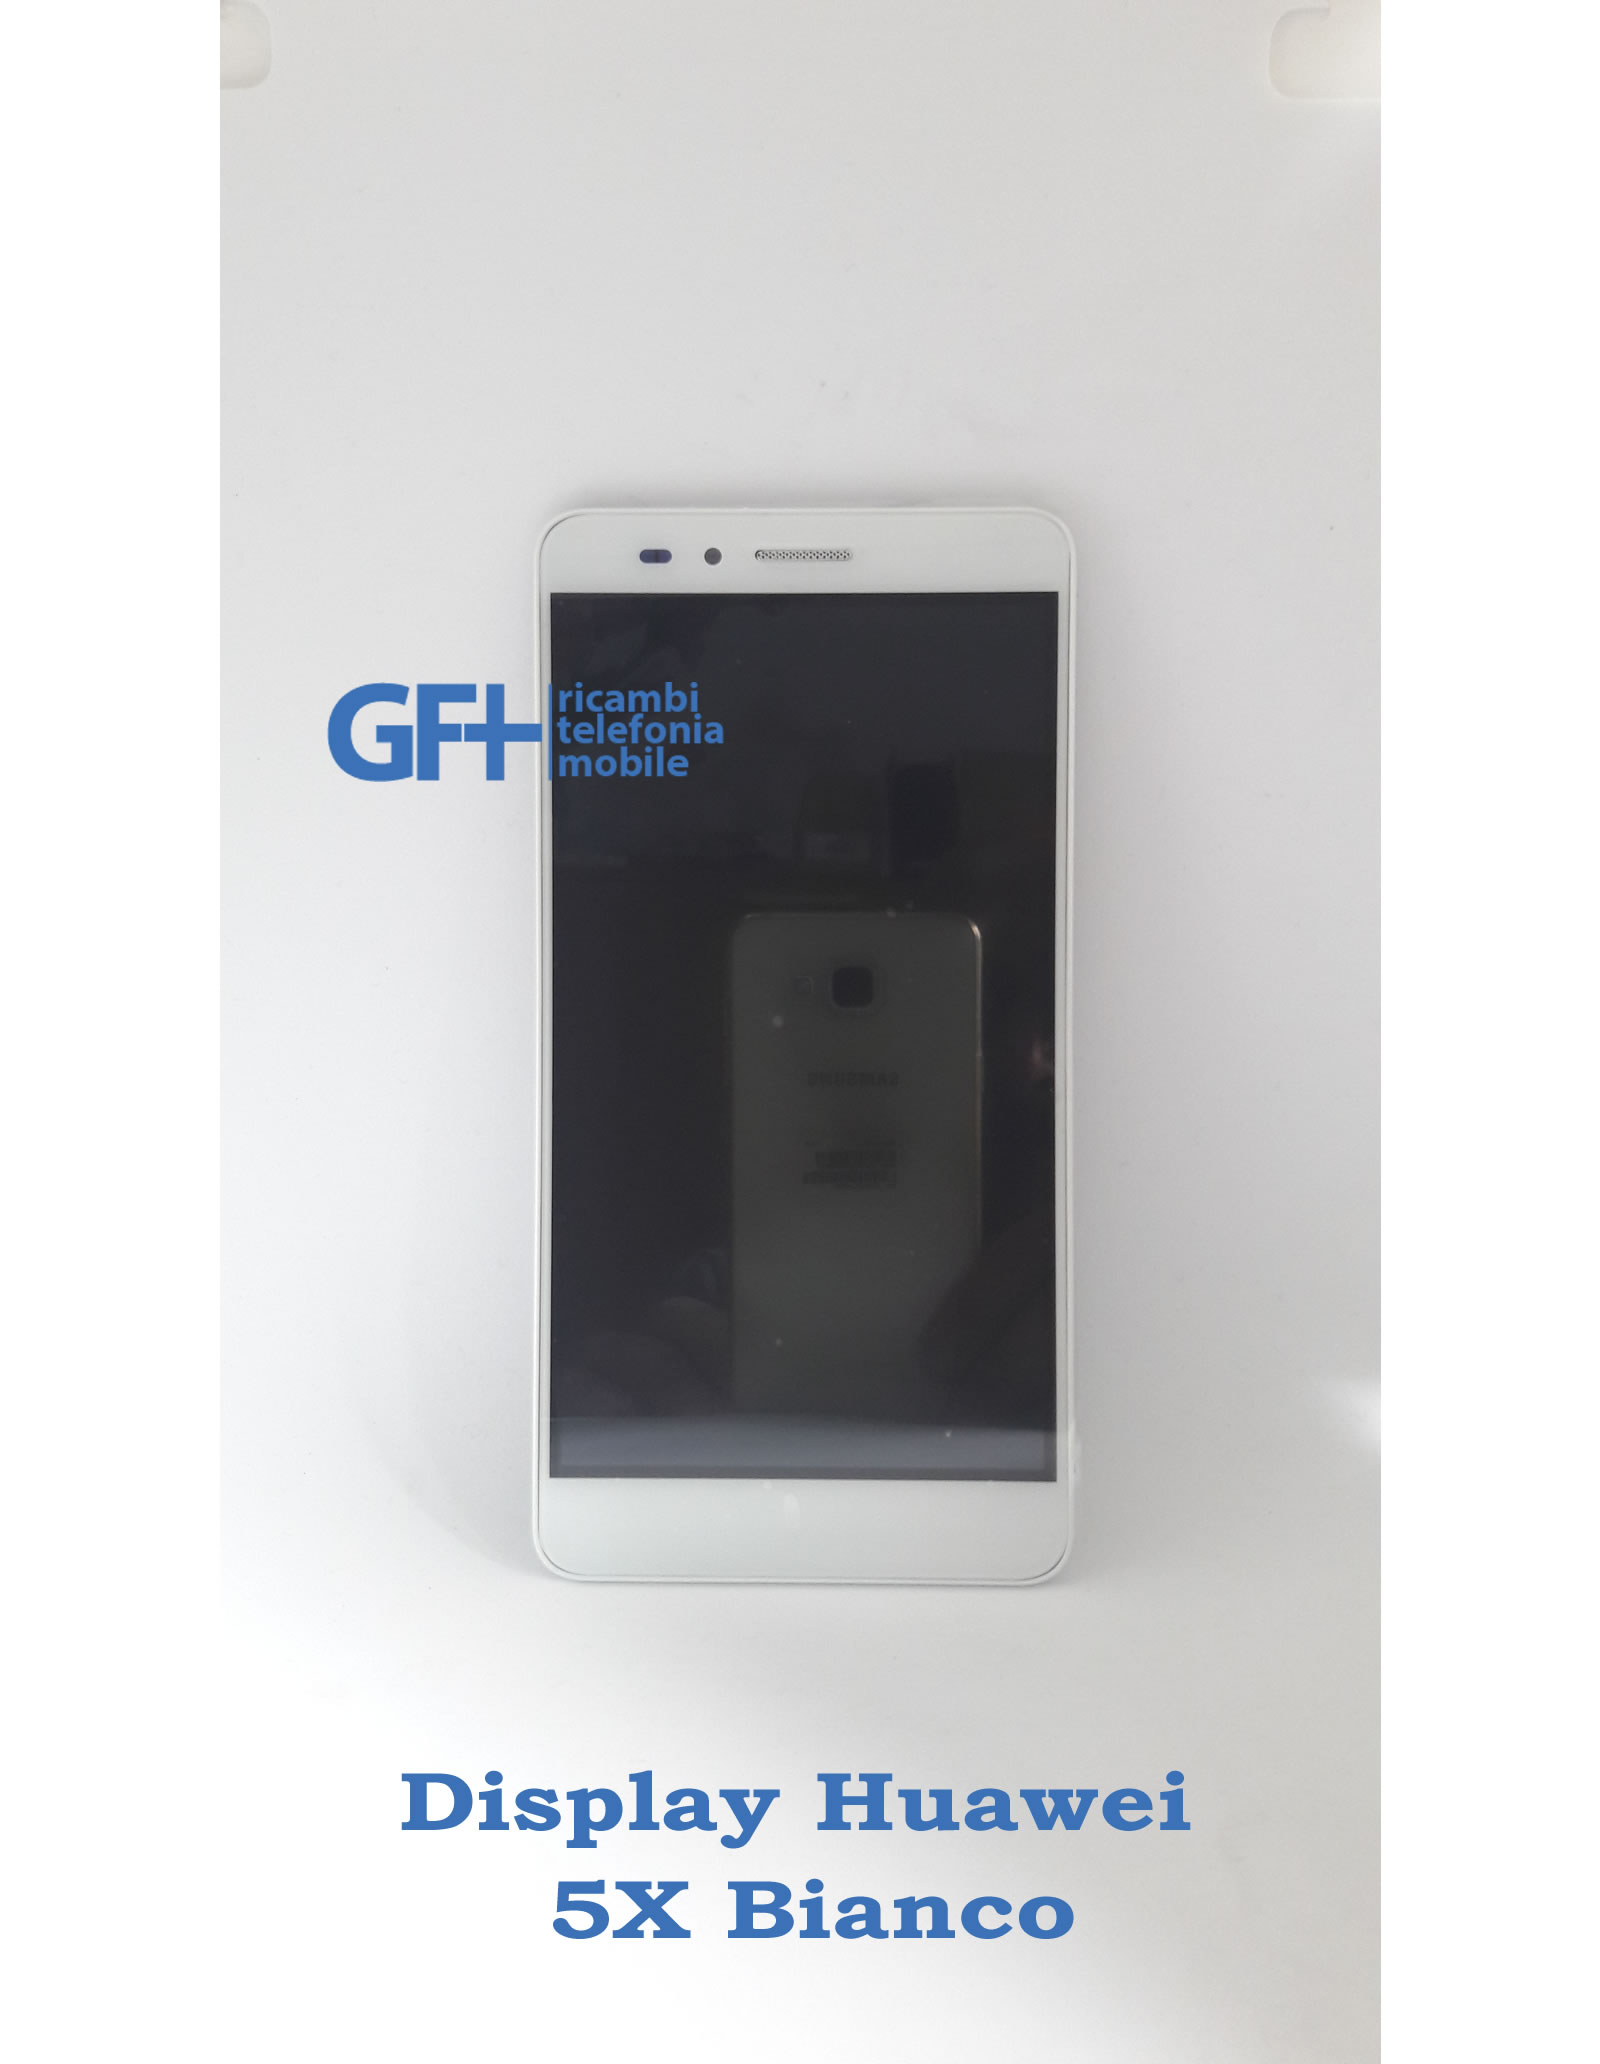 Display Huawei 5X Bianco